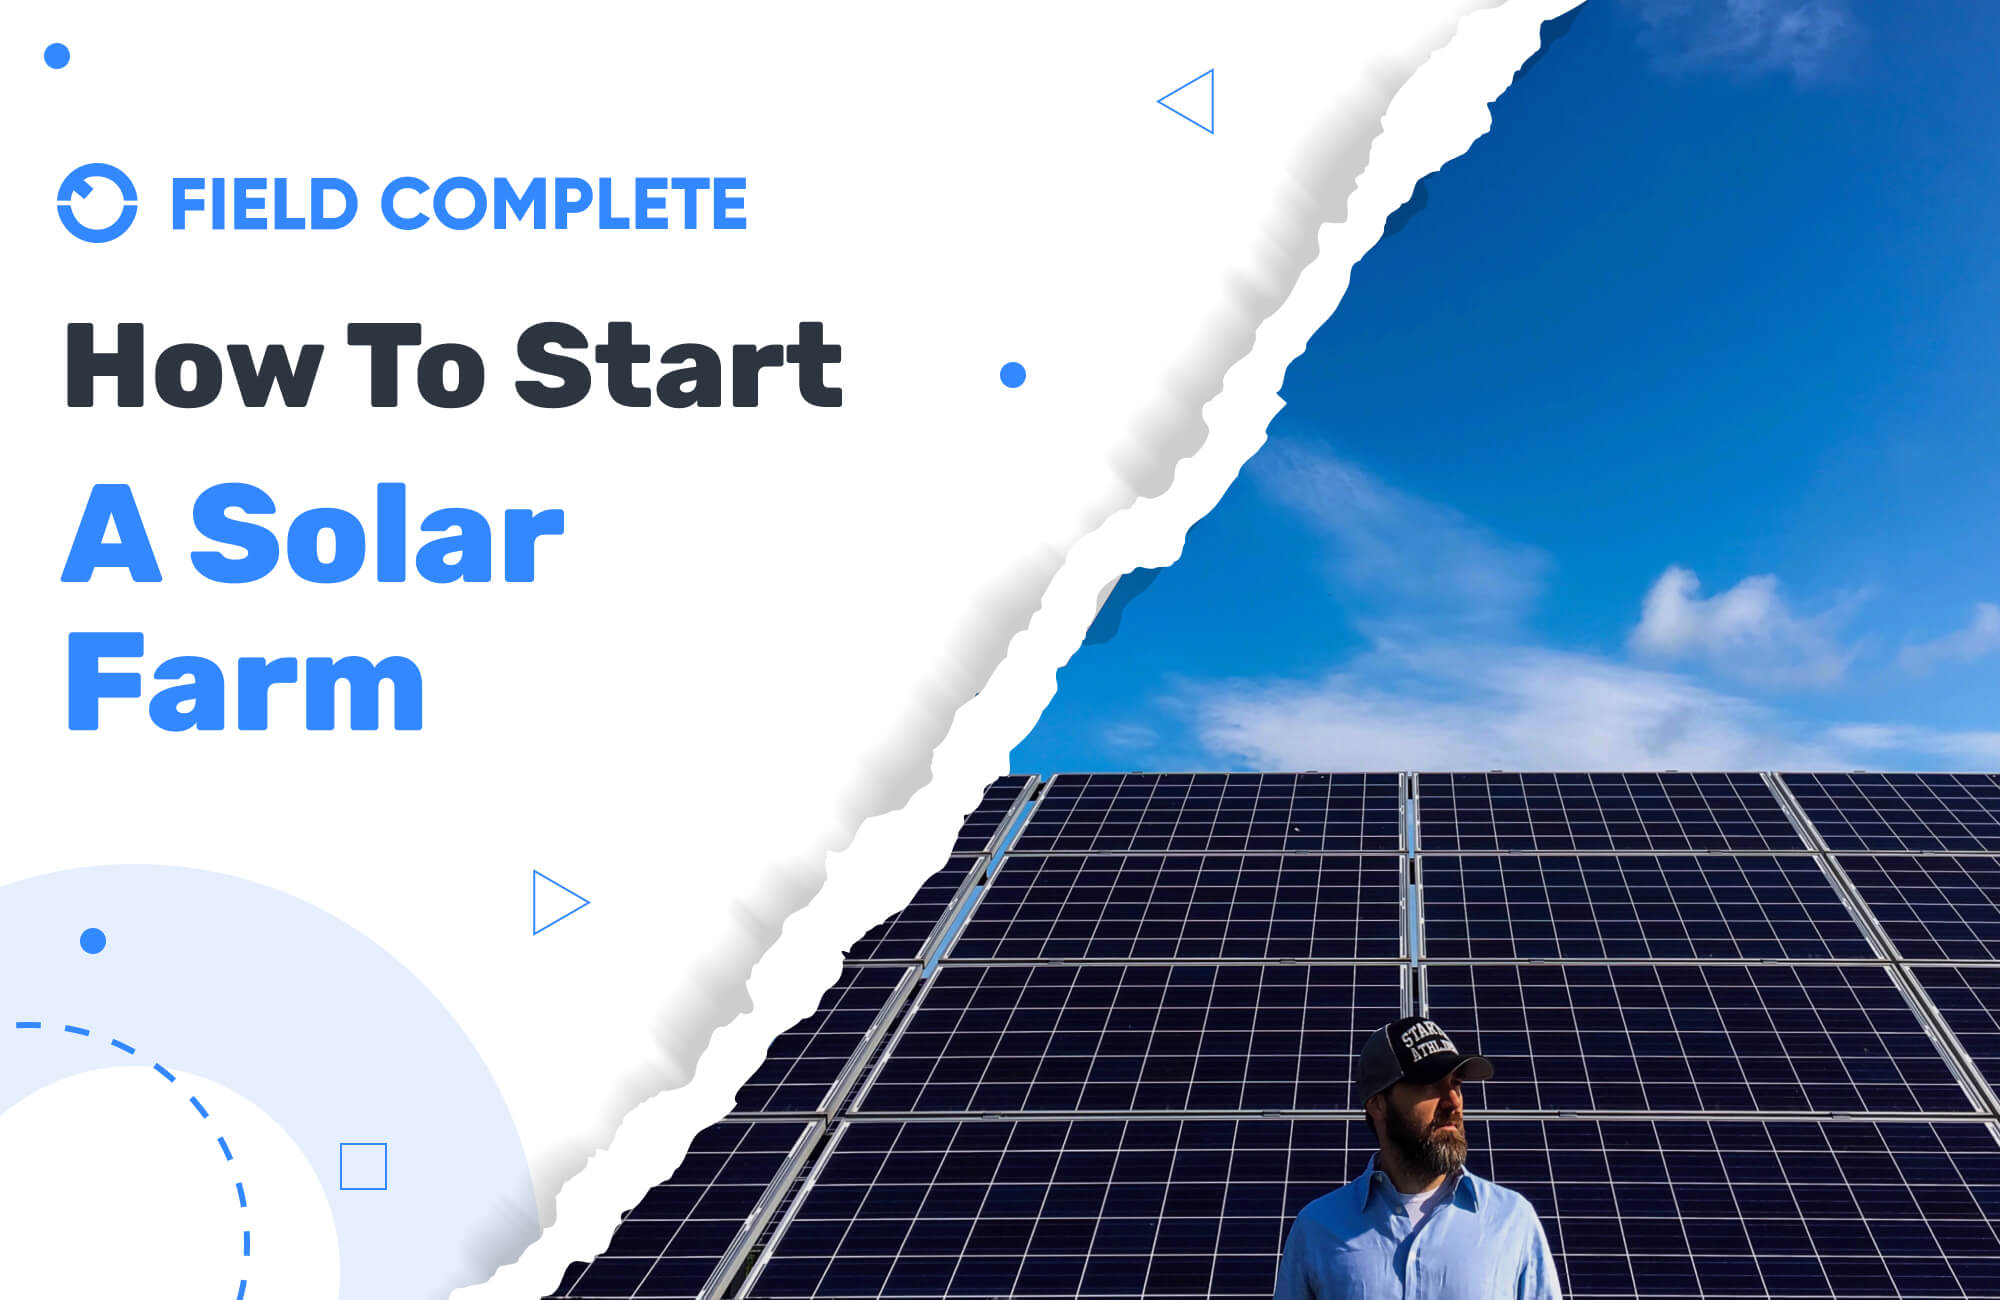 How To Start a Solar Farm